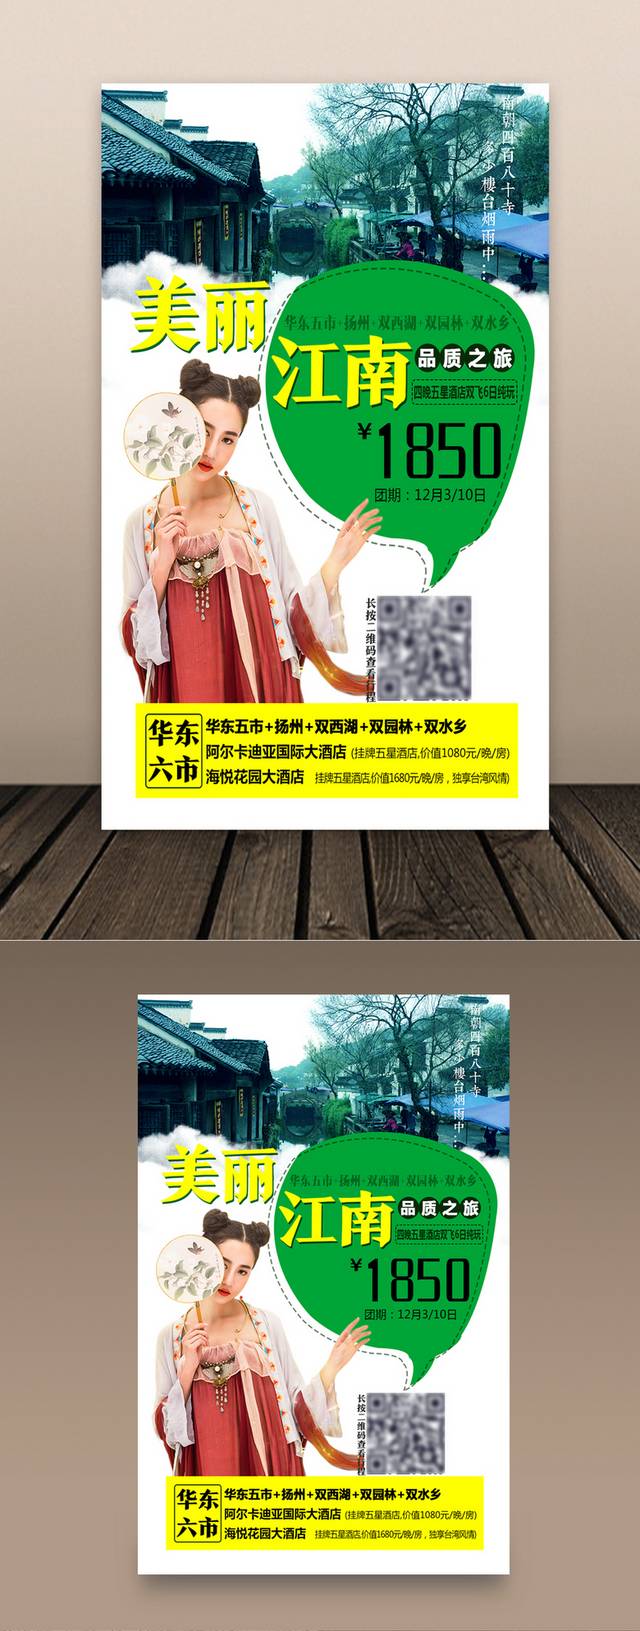 江南水乡旅游海报设计